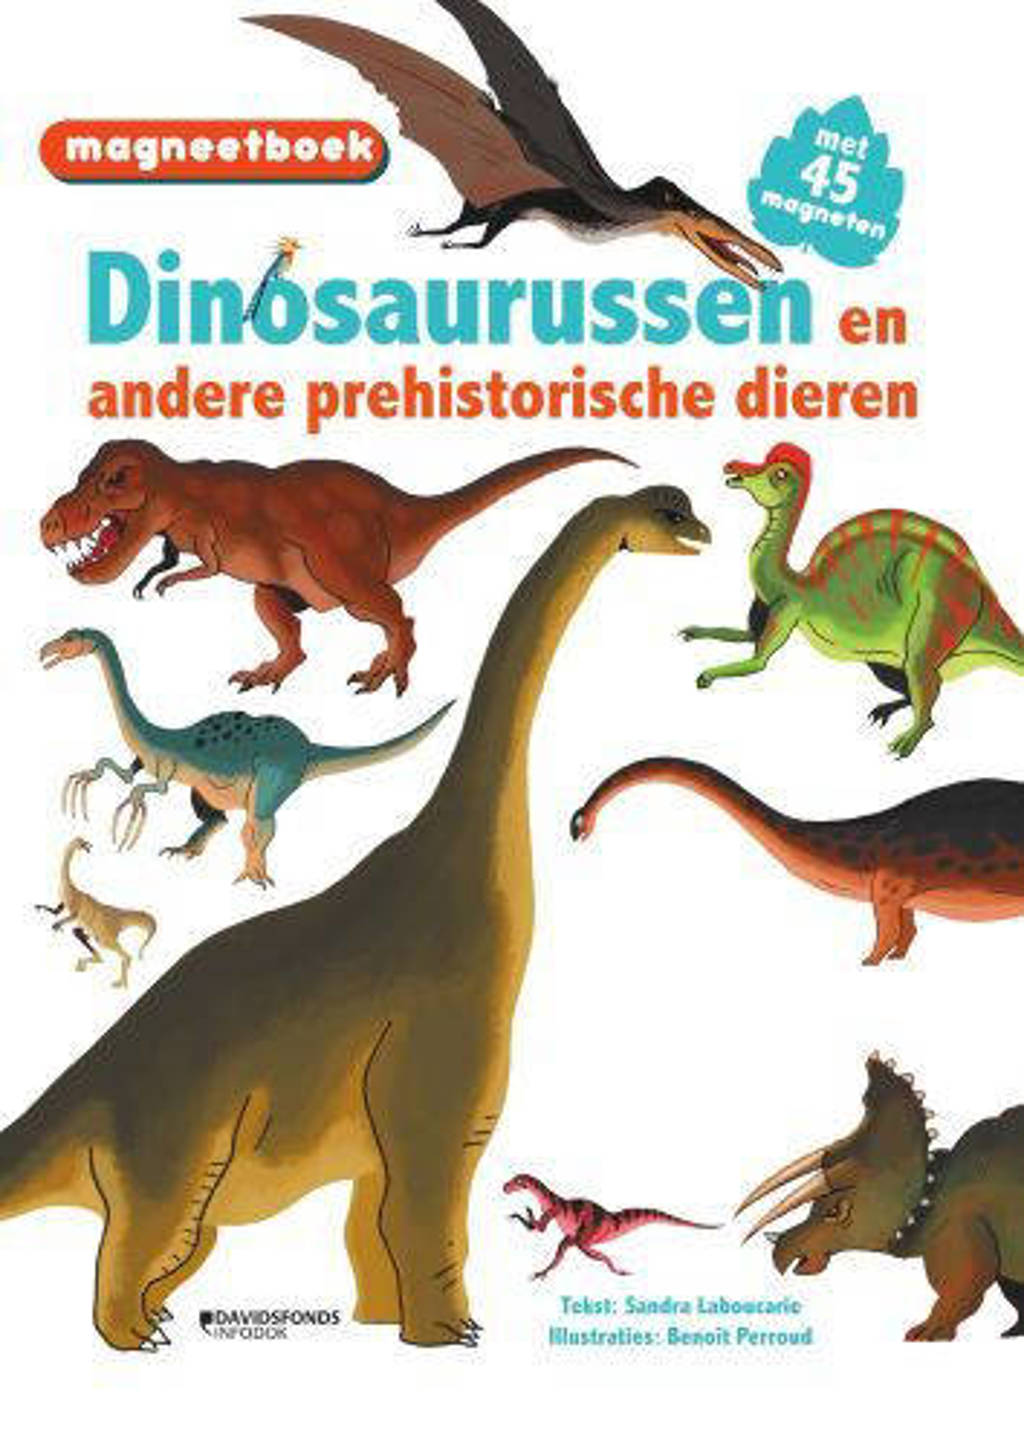 Magneetboek Dinosaurussen (en andere prehistorische dieren) - Sandra Laboucarie